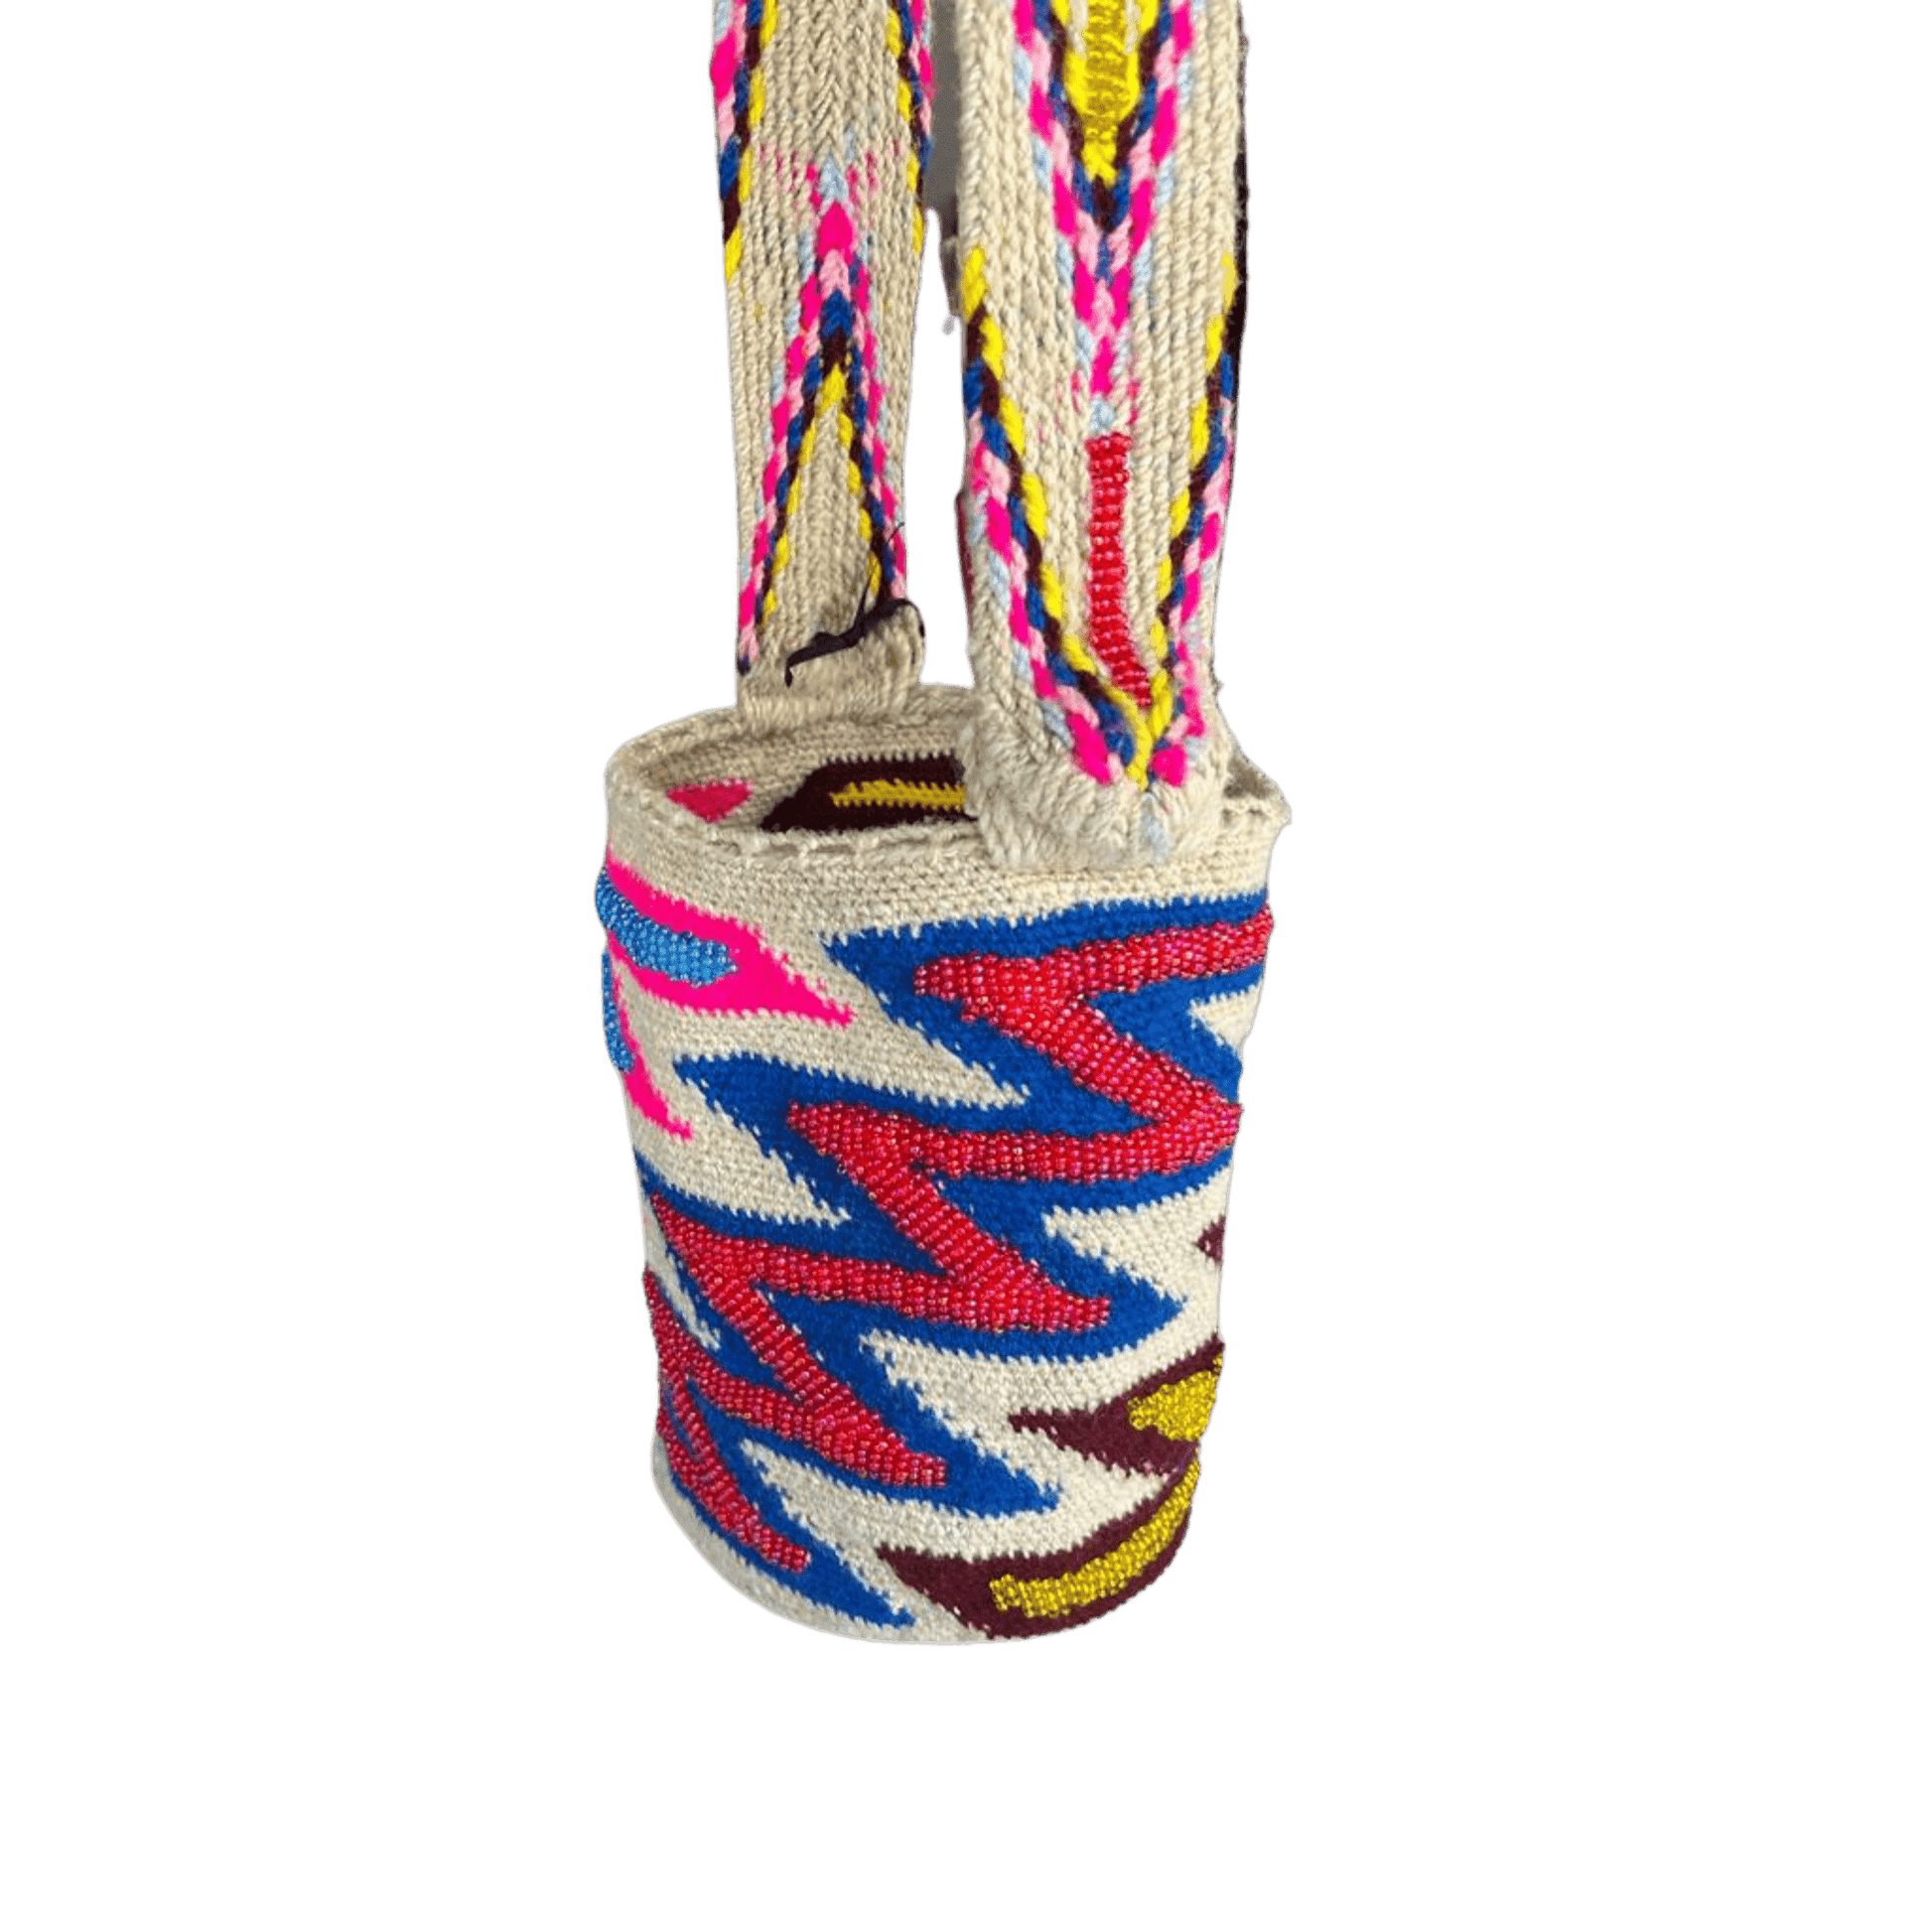 mochila arhuaca en zigzag decorada con mostacillas de colores